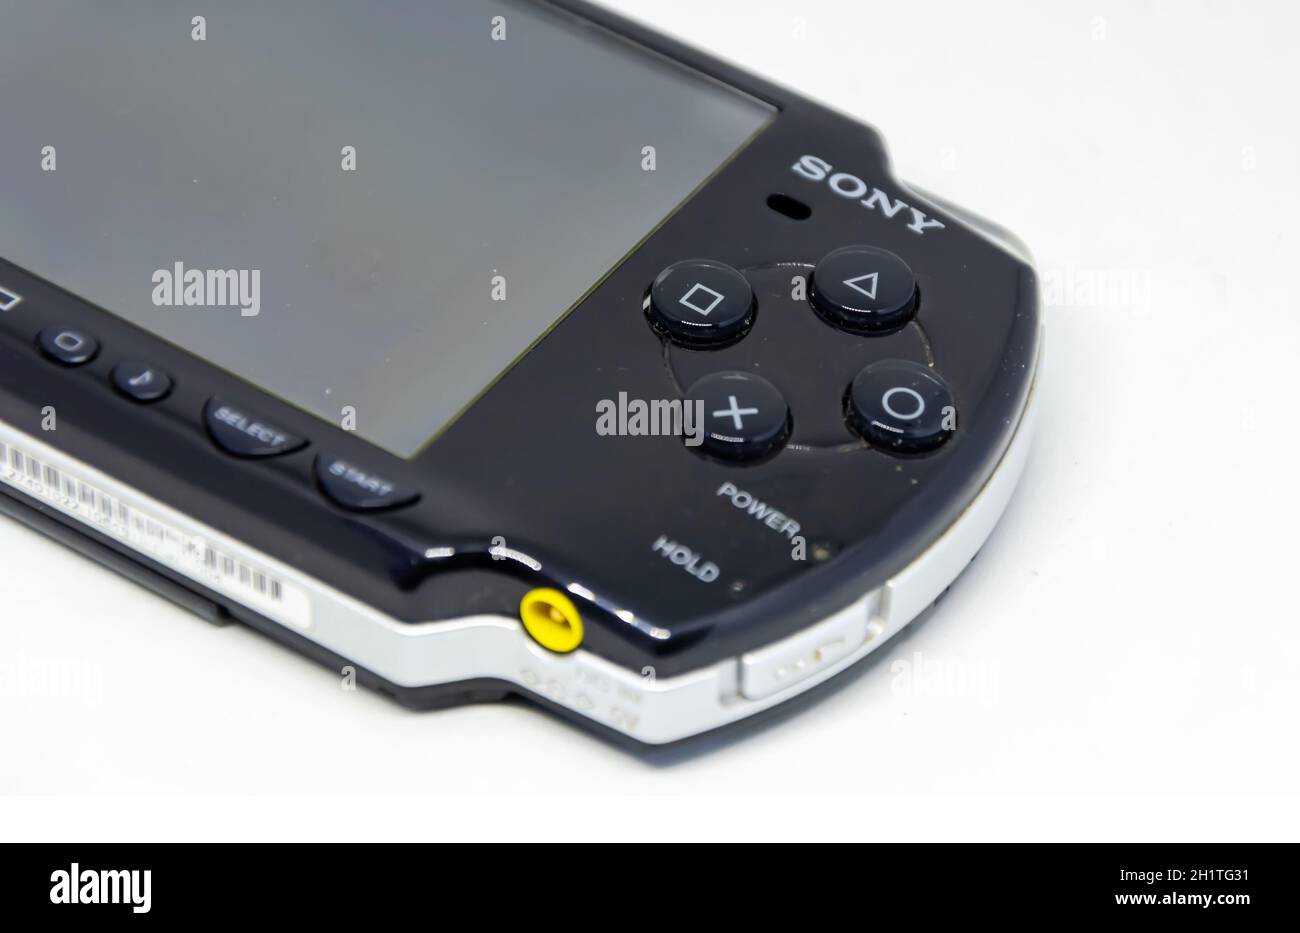 Rom, Italien, 9. April 2021: Seitenansicht einer Sony PlayStation Portable (PSP). PSP ist eine von Sony entwickelte und vermarktete Handheld-Spielekonsole. Mobile ent Stockfoto